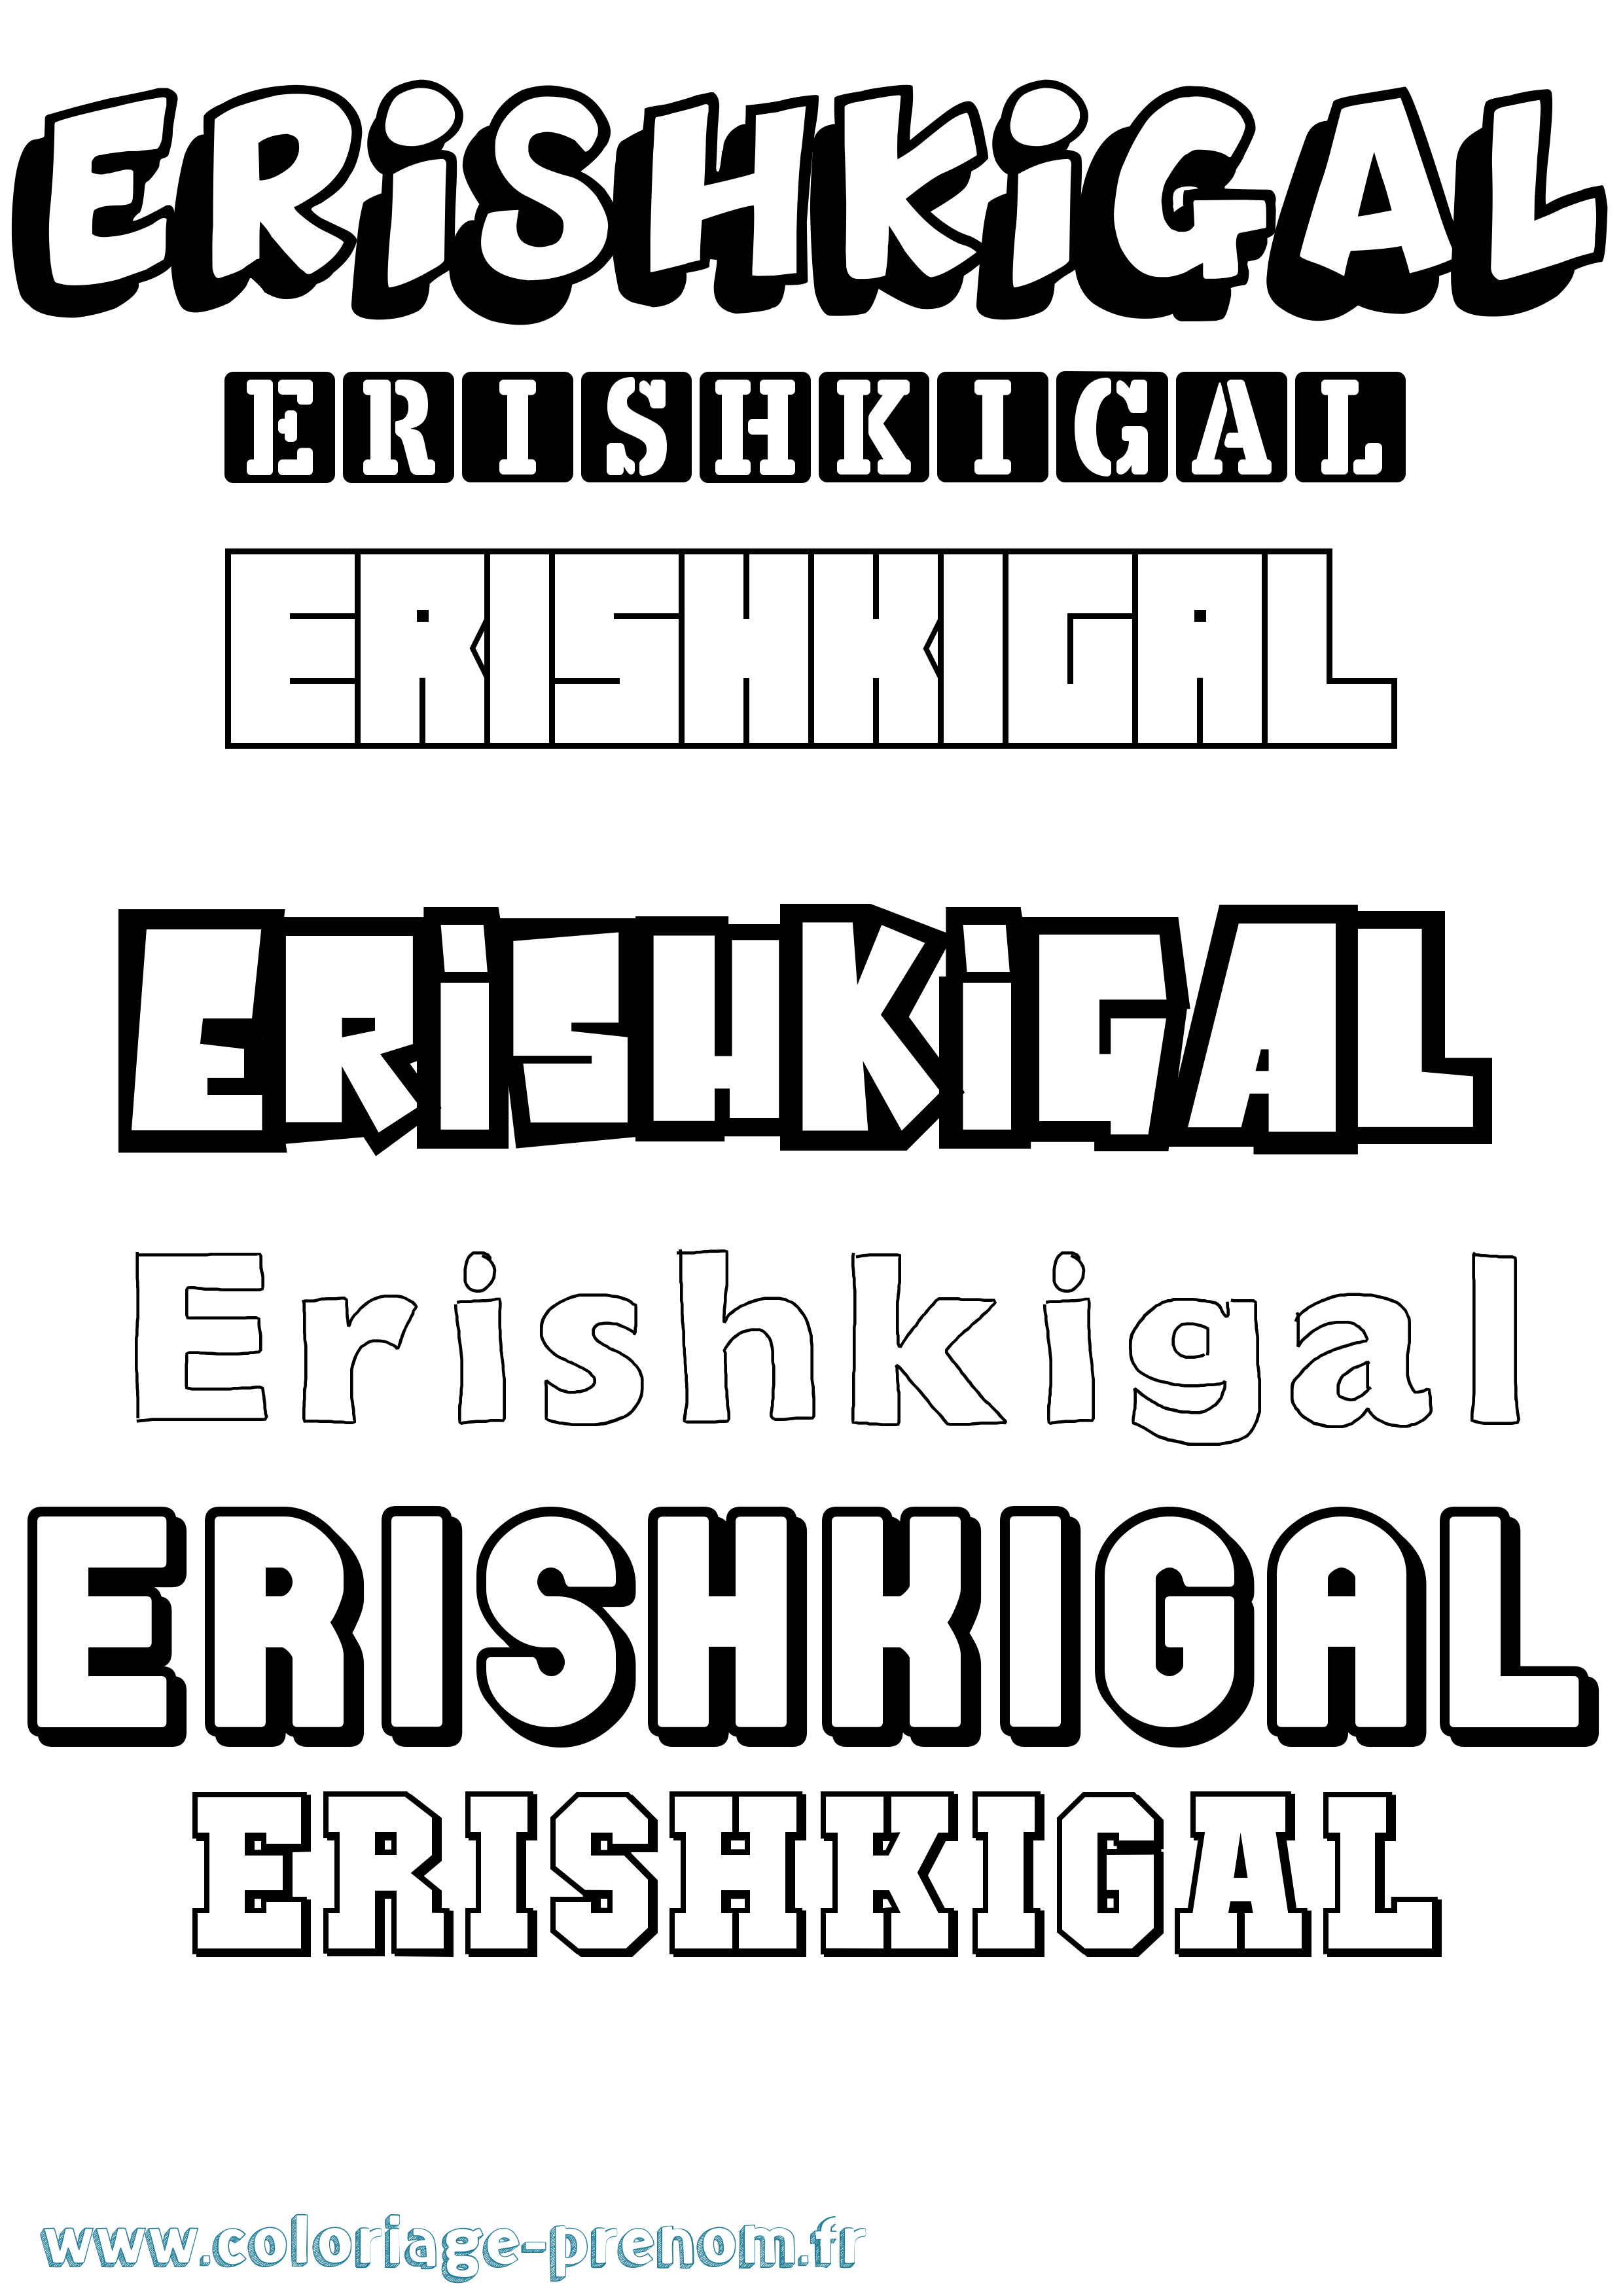 Coloriage prénom Erishkigal Simple